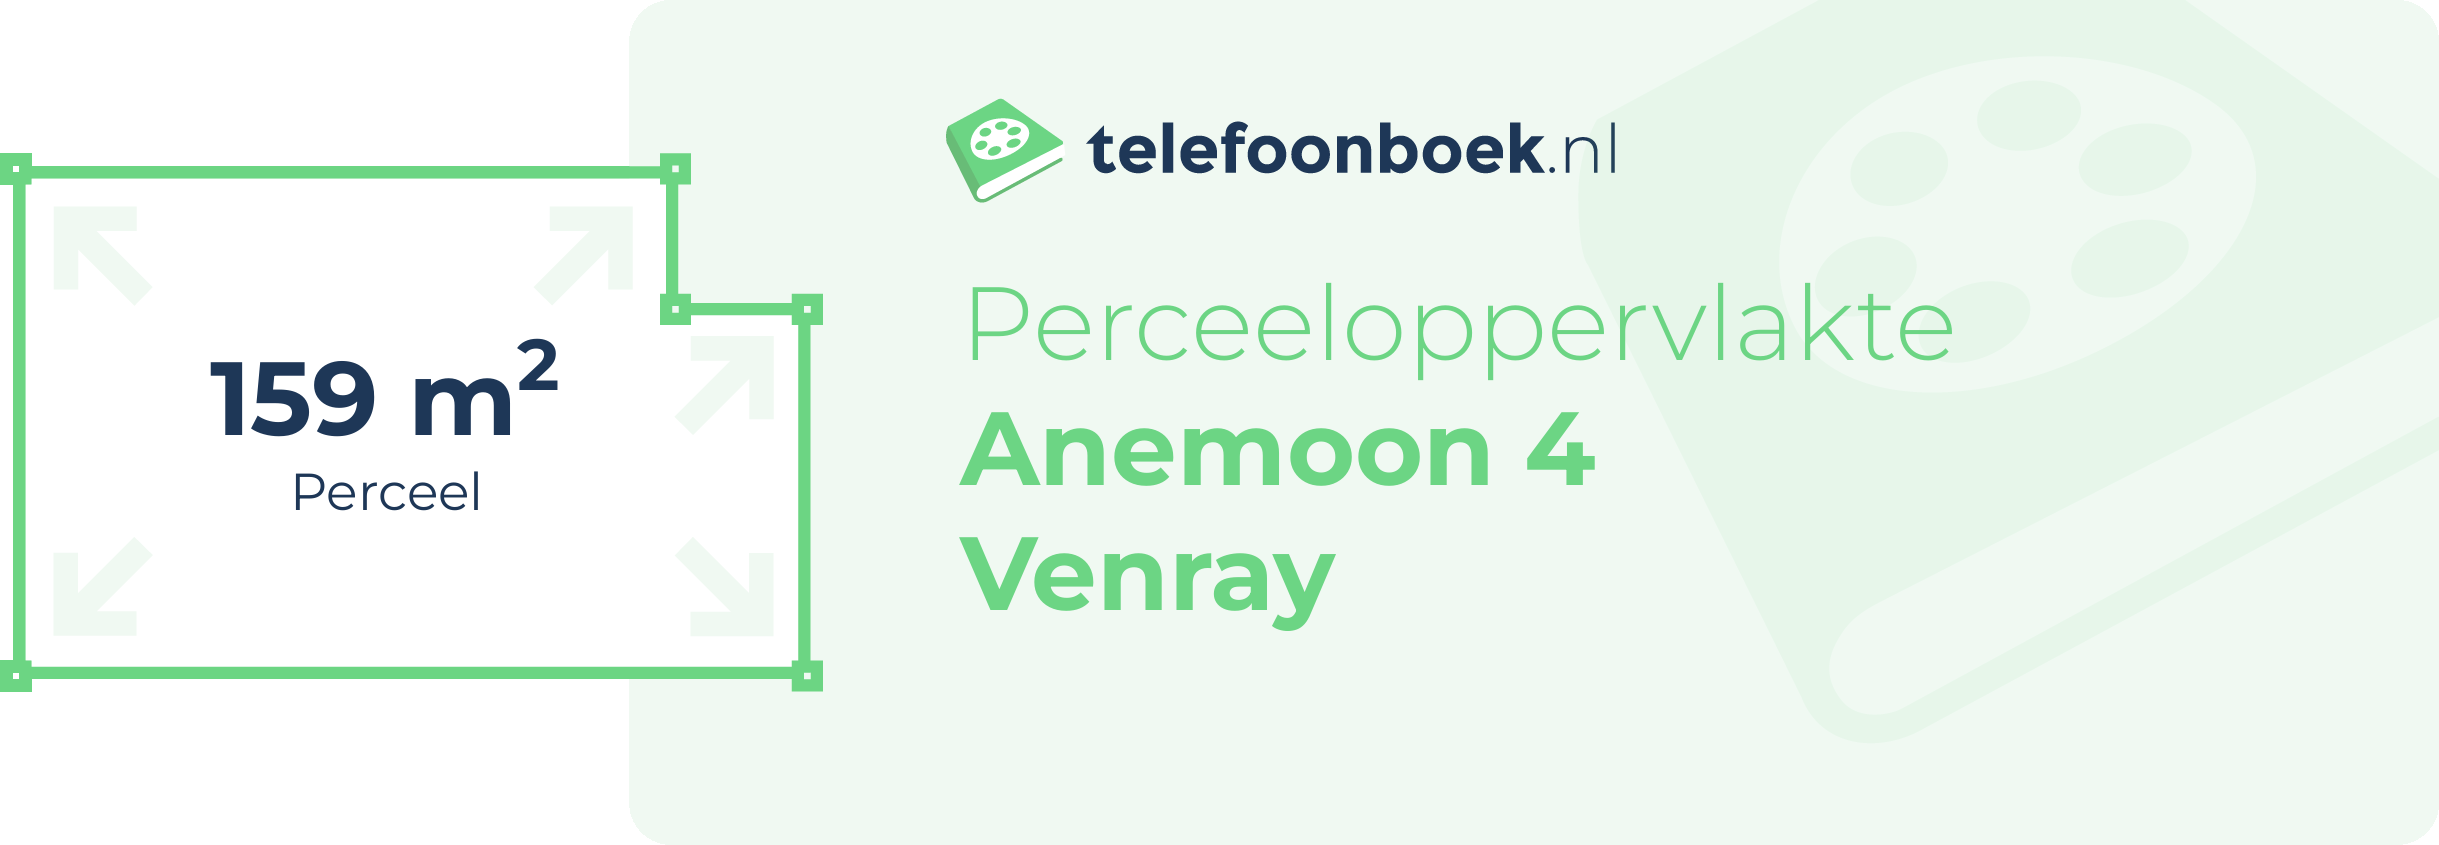 Perceeloppervlakte Anemoon 4 Venray